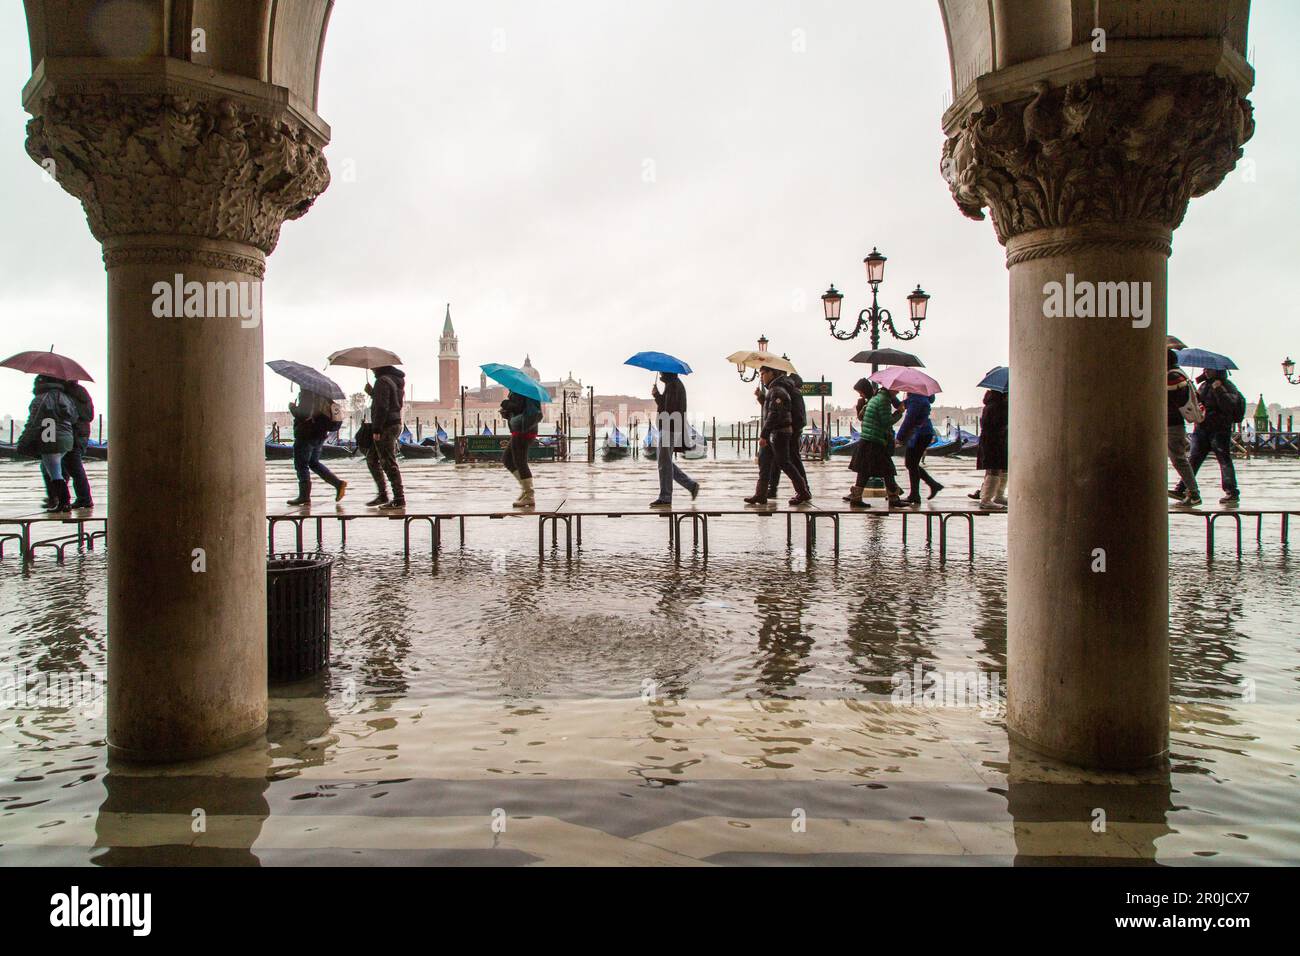 Touristen mit Sonnenschirmen und Plastikschuhen, Gummistiefeln, gehen auf Passarellenwegen während der Acqua alta in der Nähe des Dogenpalastes, des Markusplatzes, S. Stockfoto